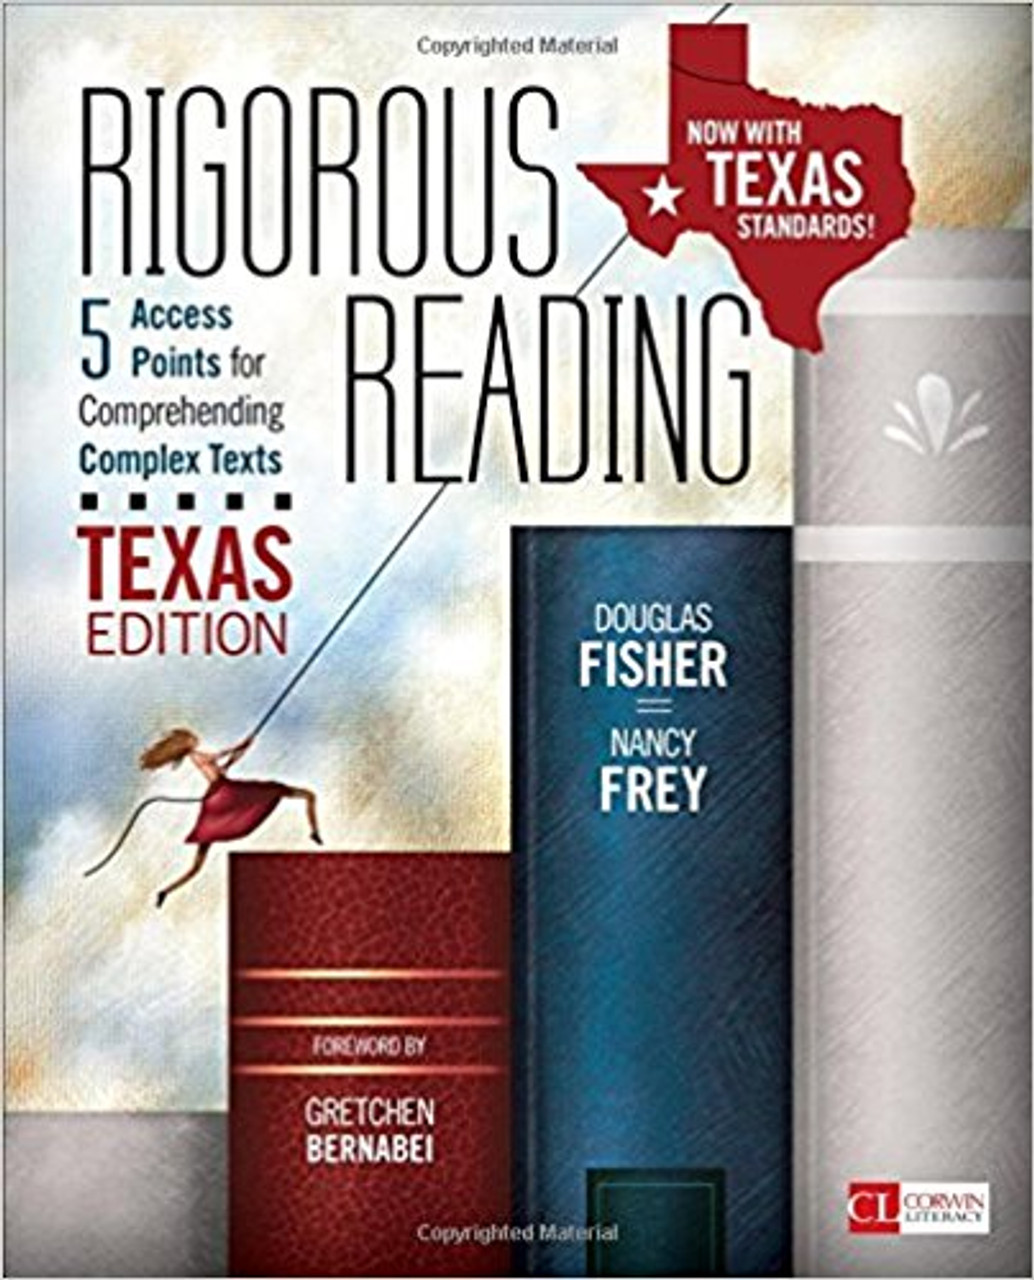 Rigorous Reading, Texas Edition by Douglas Fisher